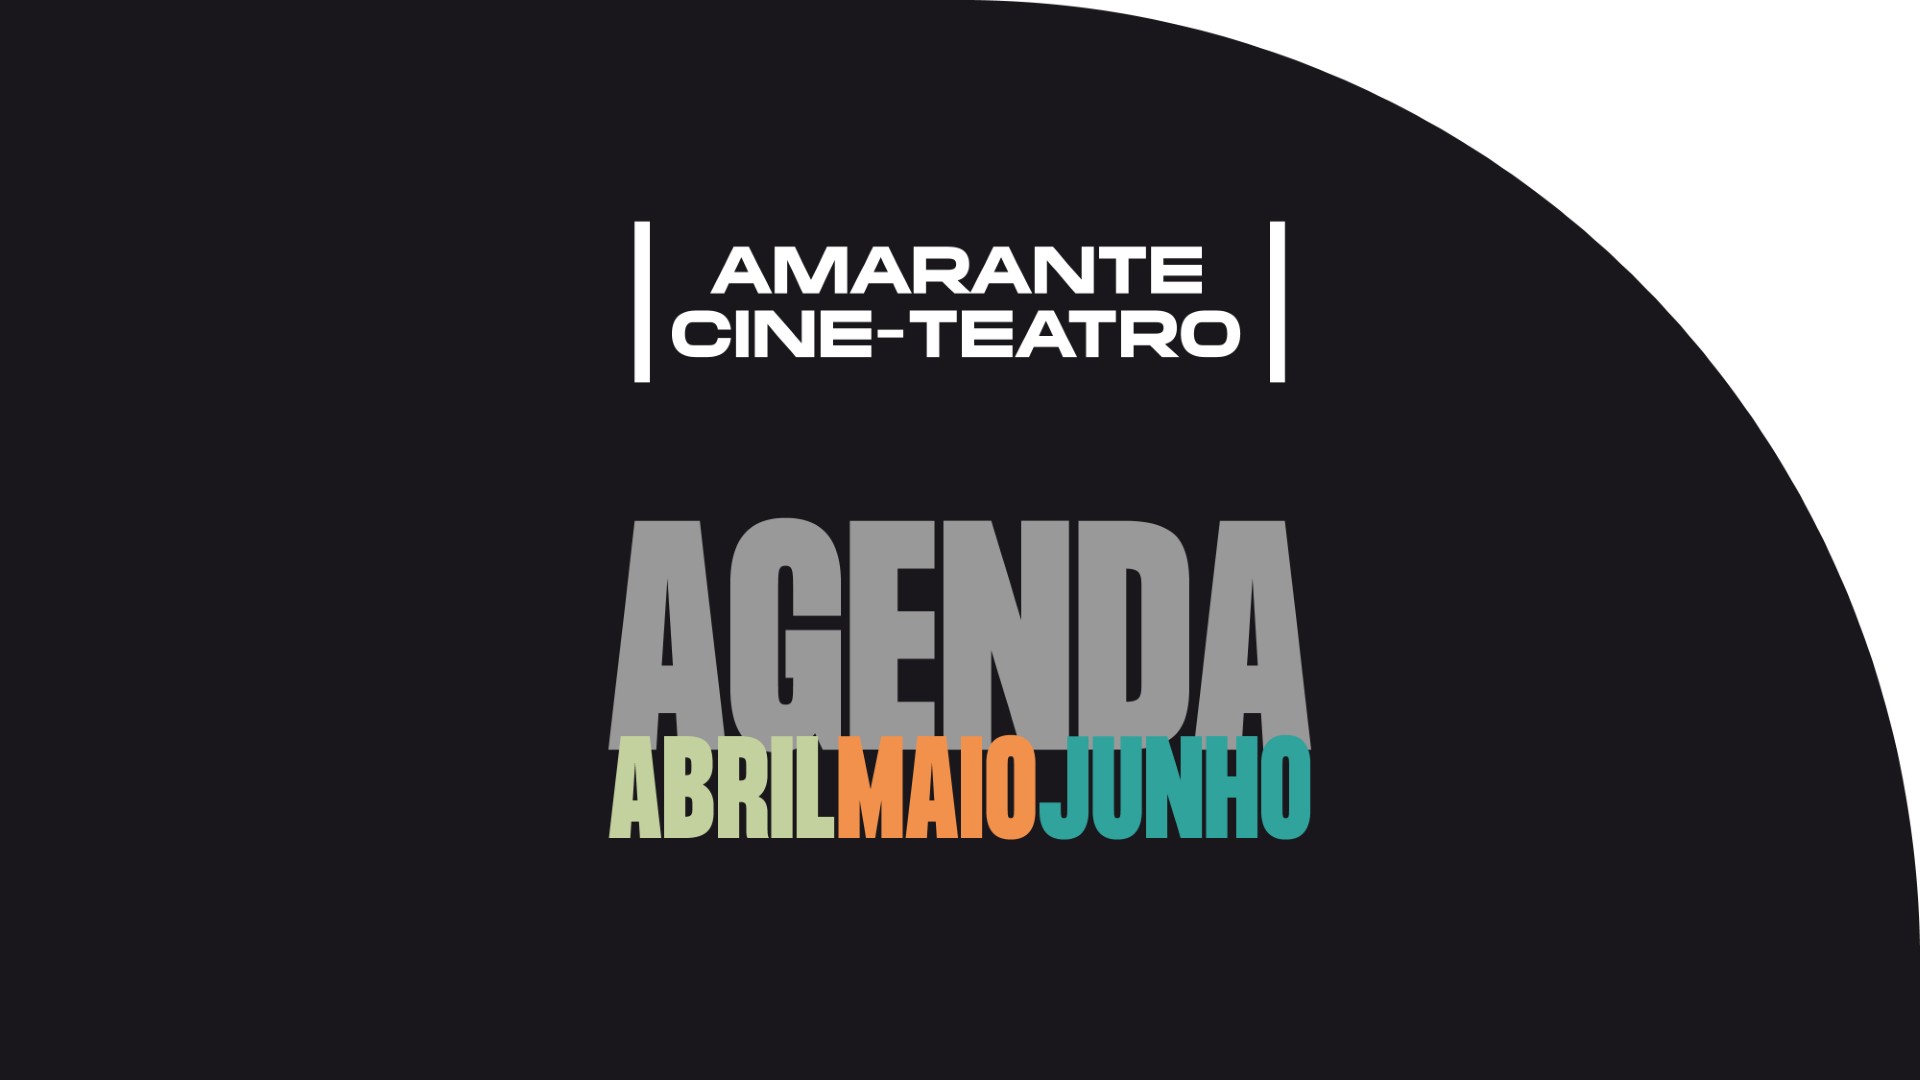 Amarante Cine-Teatro lança programação até junho